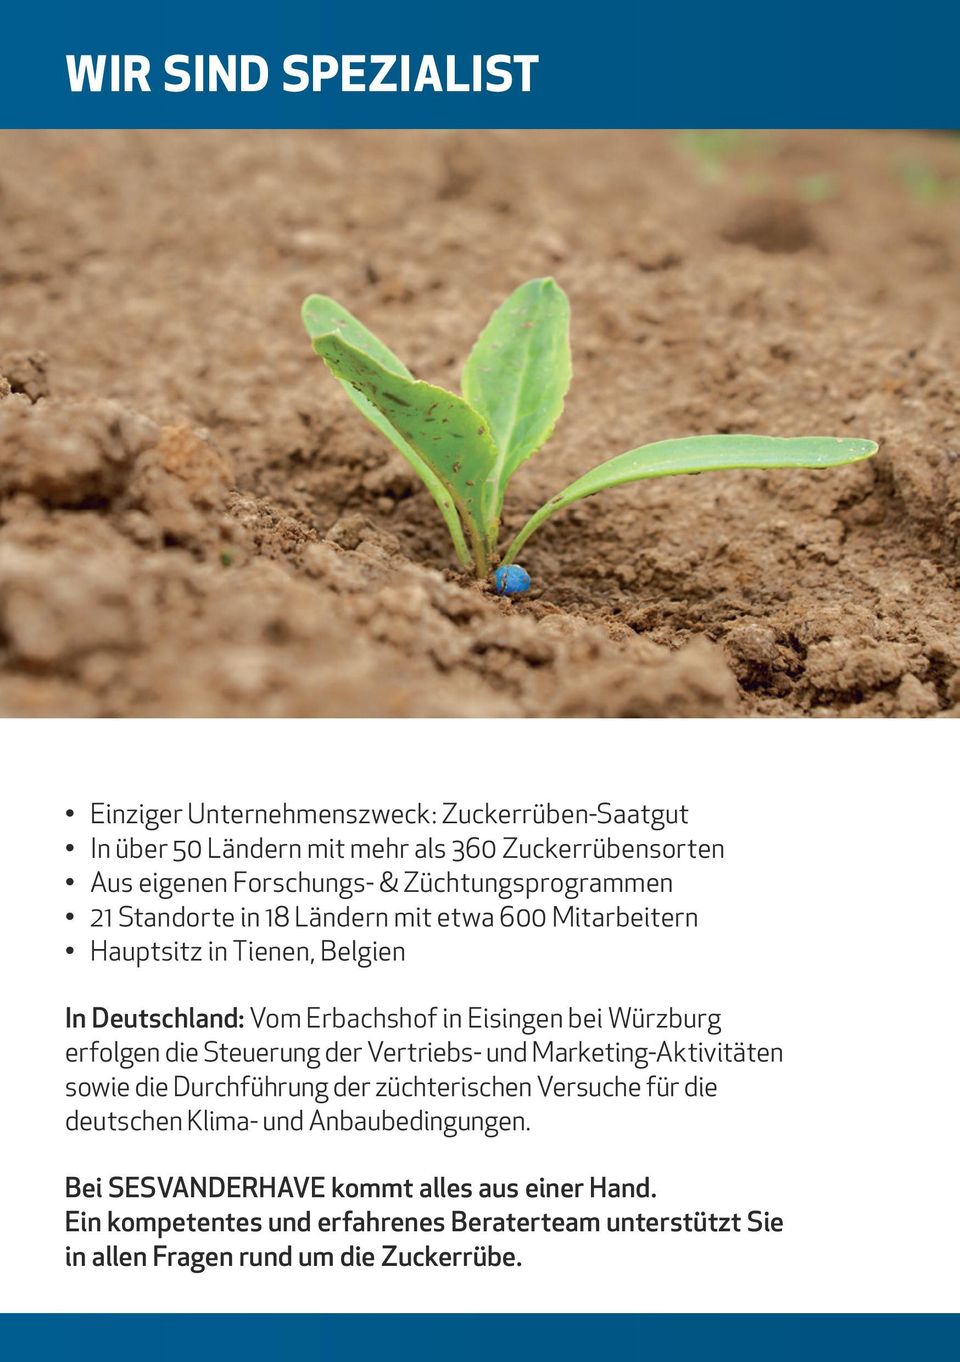 Würzburg erfolgen die Steuerung der Vertriebs- und Marketing-Aktivitäten sowie die Durchführung der züchterischen Versuche für die deutschen Klima- und